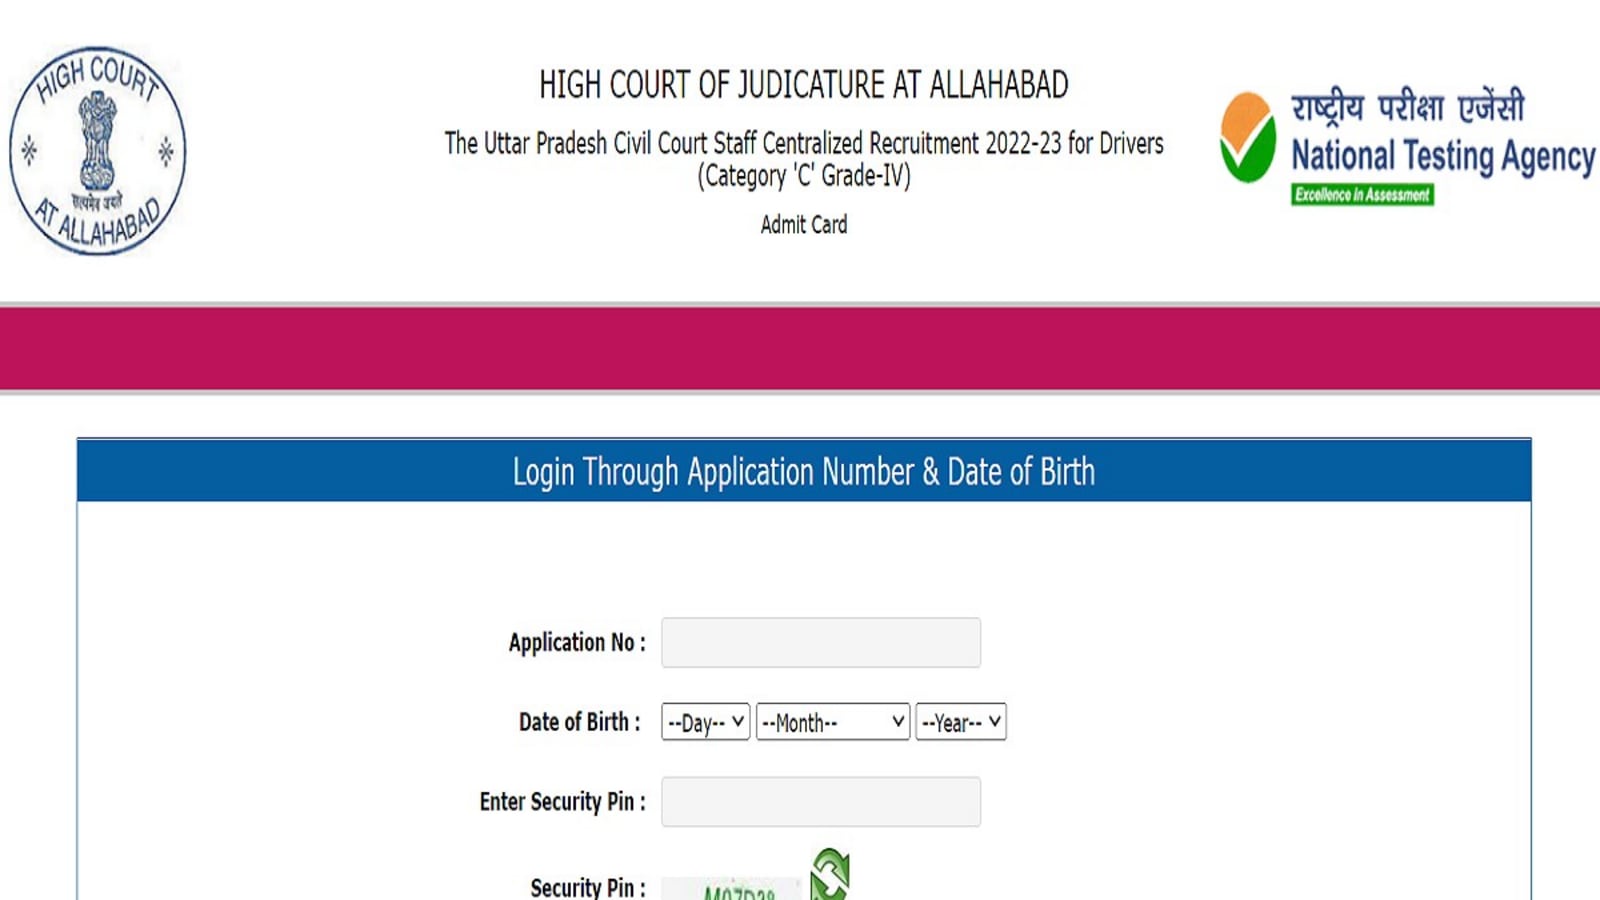 Toegangskaart Allahabad High Court 2022 voor chauffeursposten, download link hier |  competitieve examens